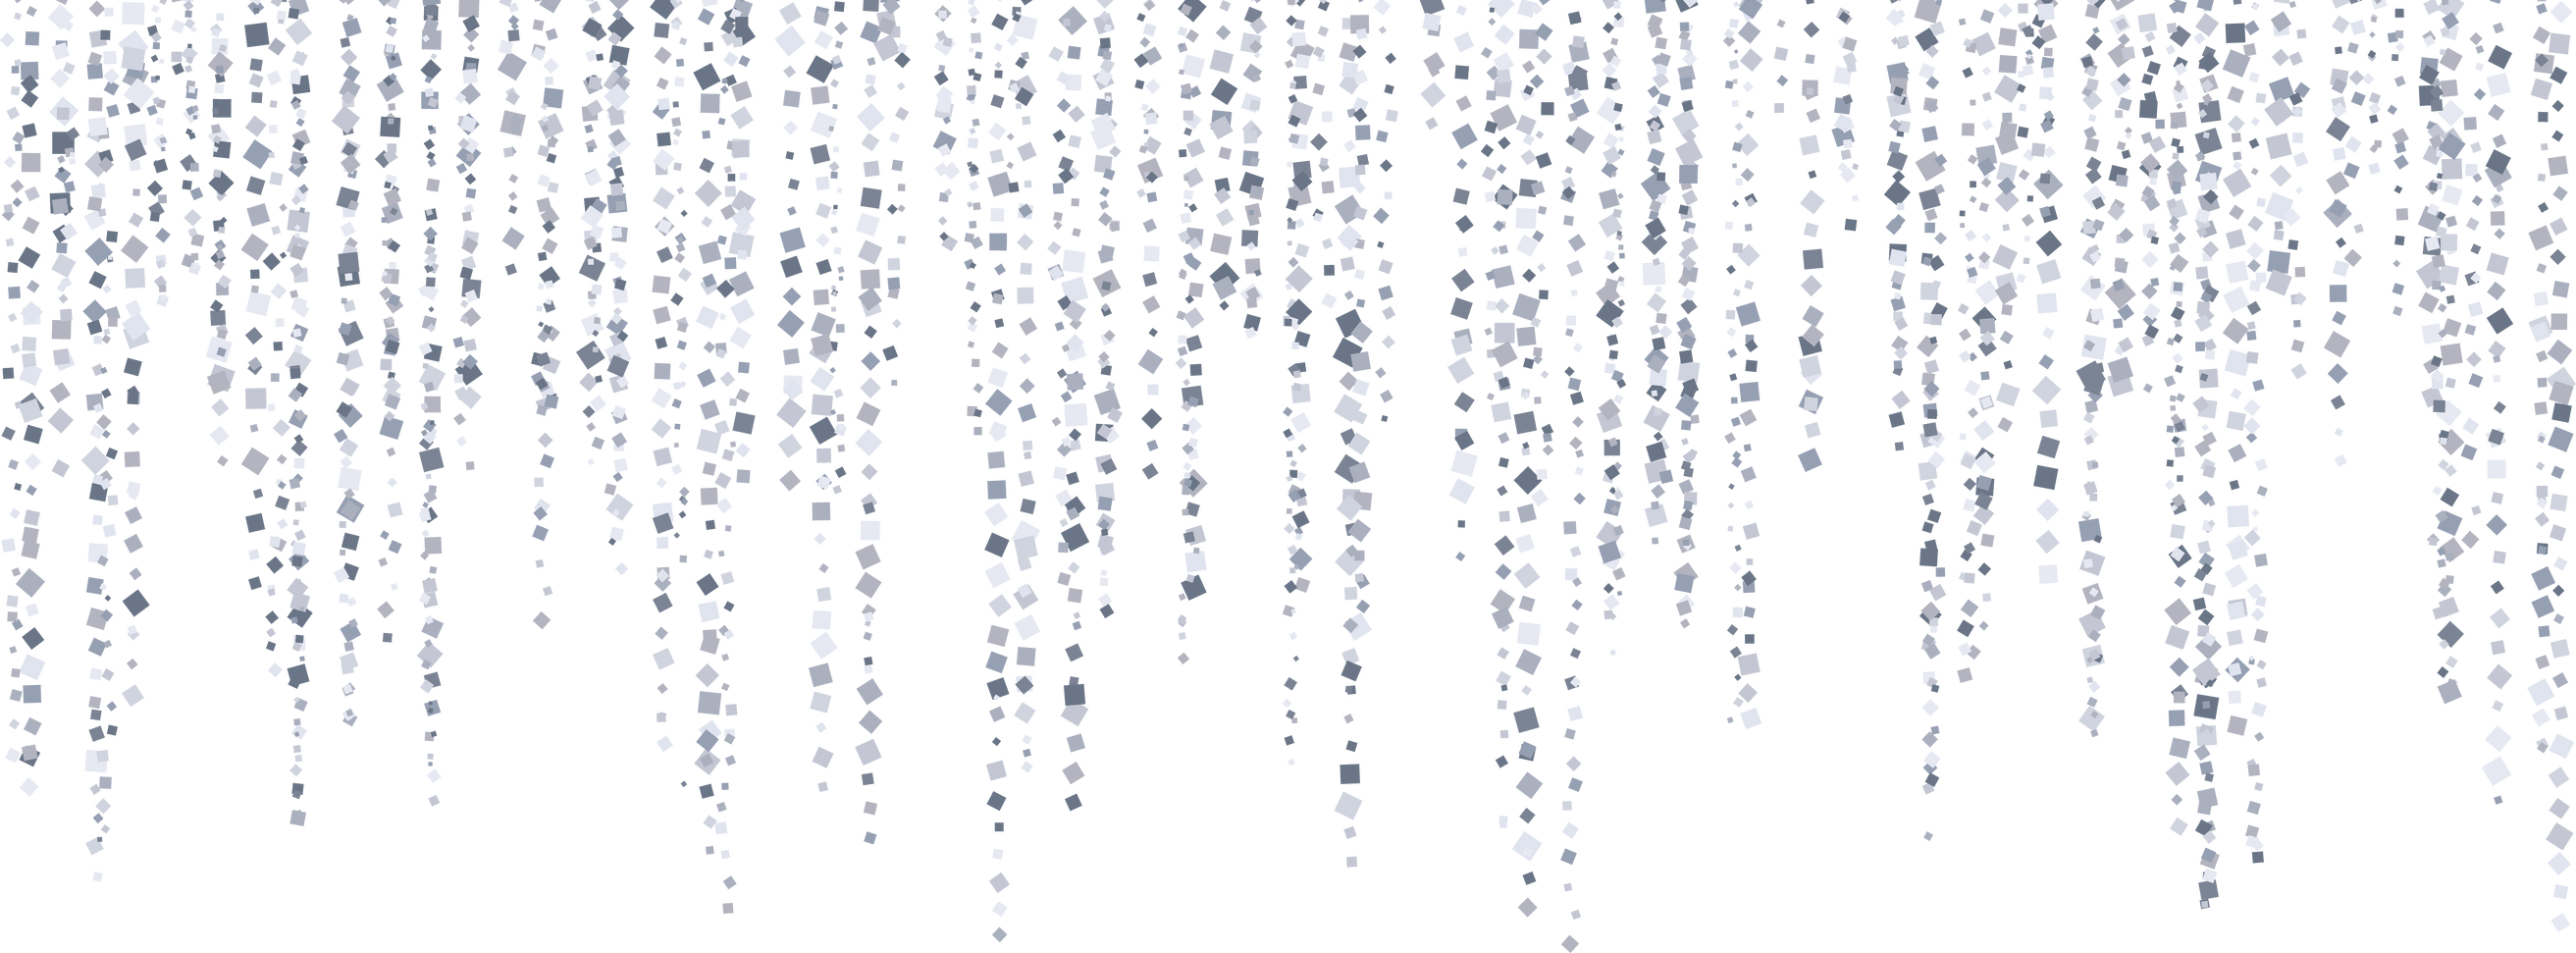 Silver glitter rain garland decoration